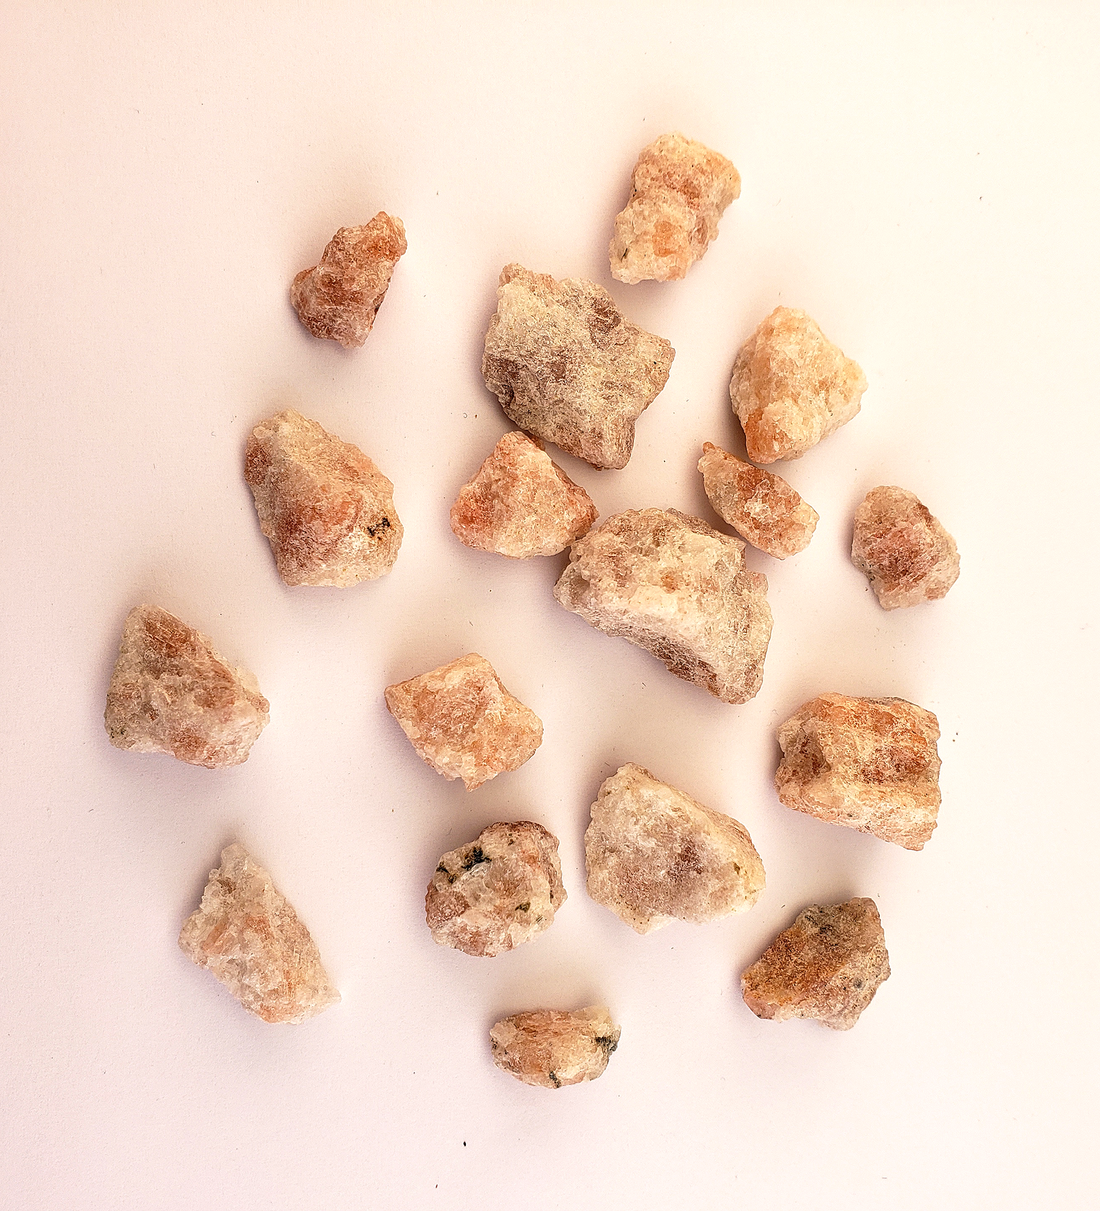 Raw Mini Sunstone Gemstone - Multi Stone or Bulk Wholesale Lots - On White Background